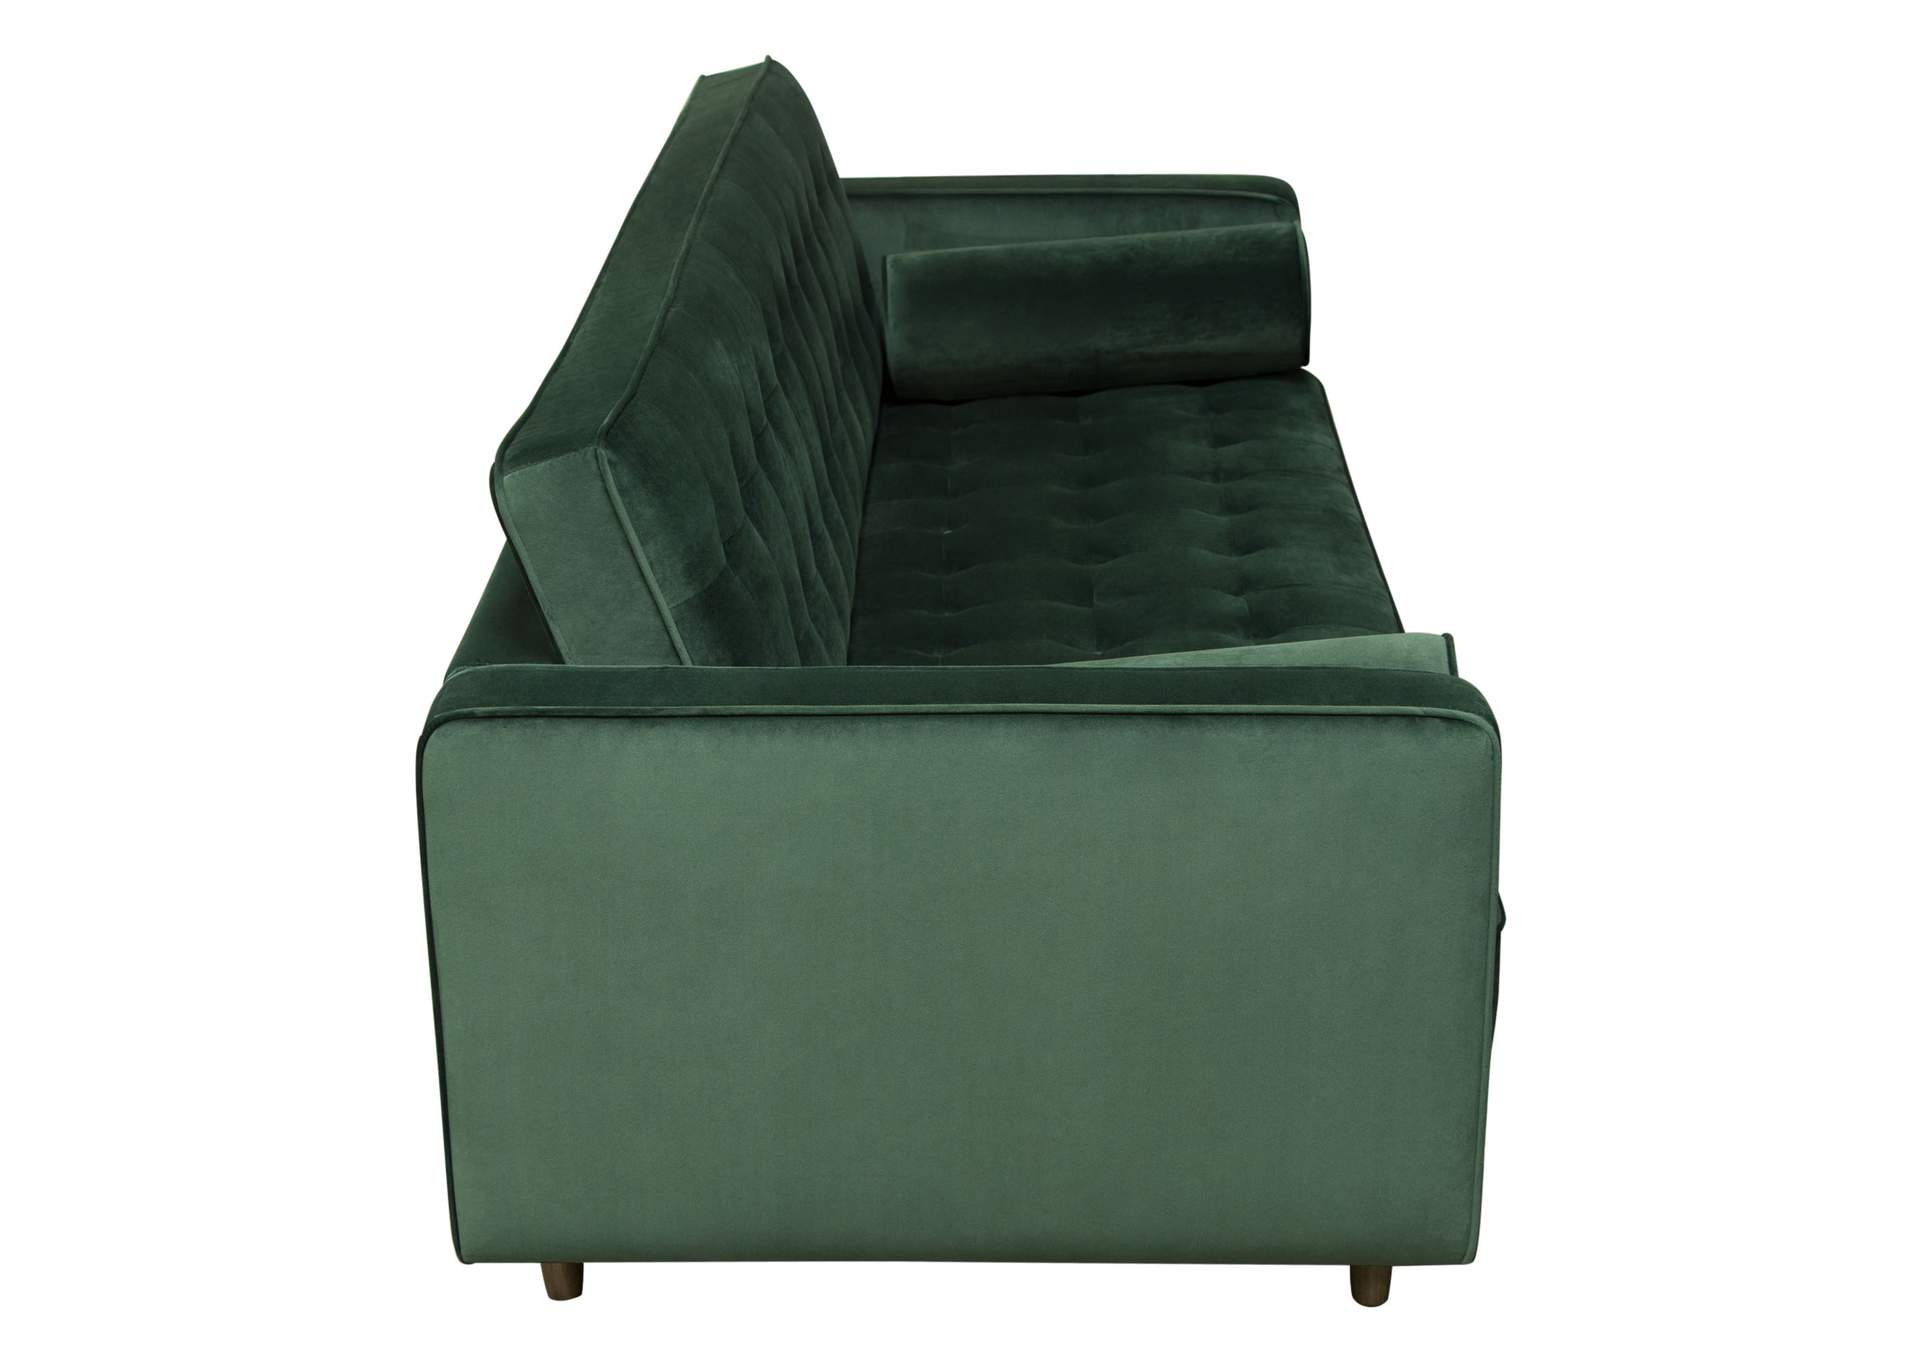 Juniper Tufted Sofa in Hunter Green Velvet with (2) Bolster Pillows by Diamond Sofa,Diamond Sofa